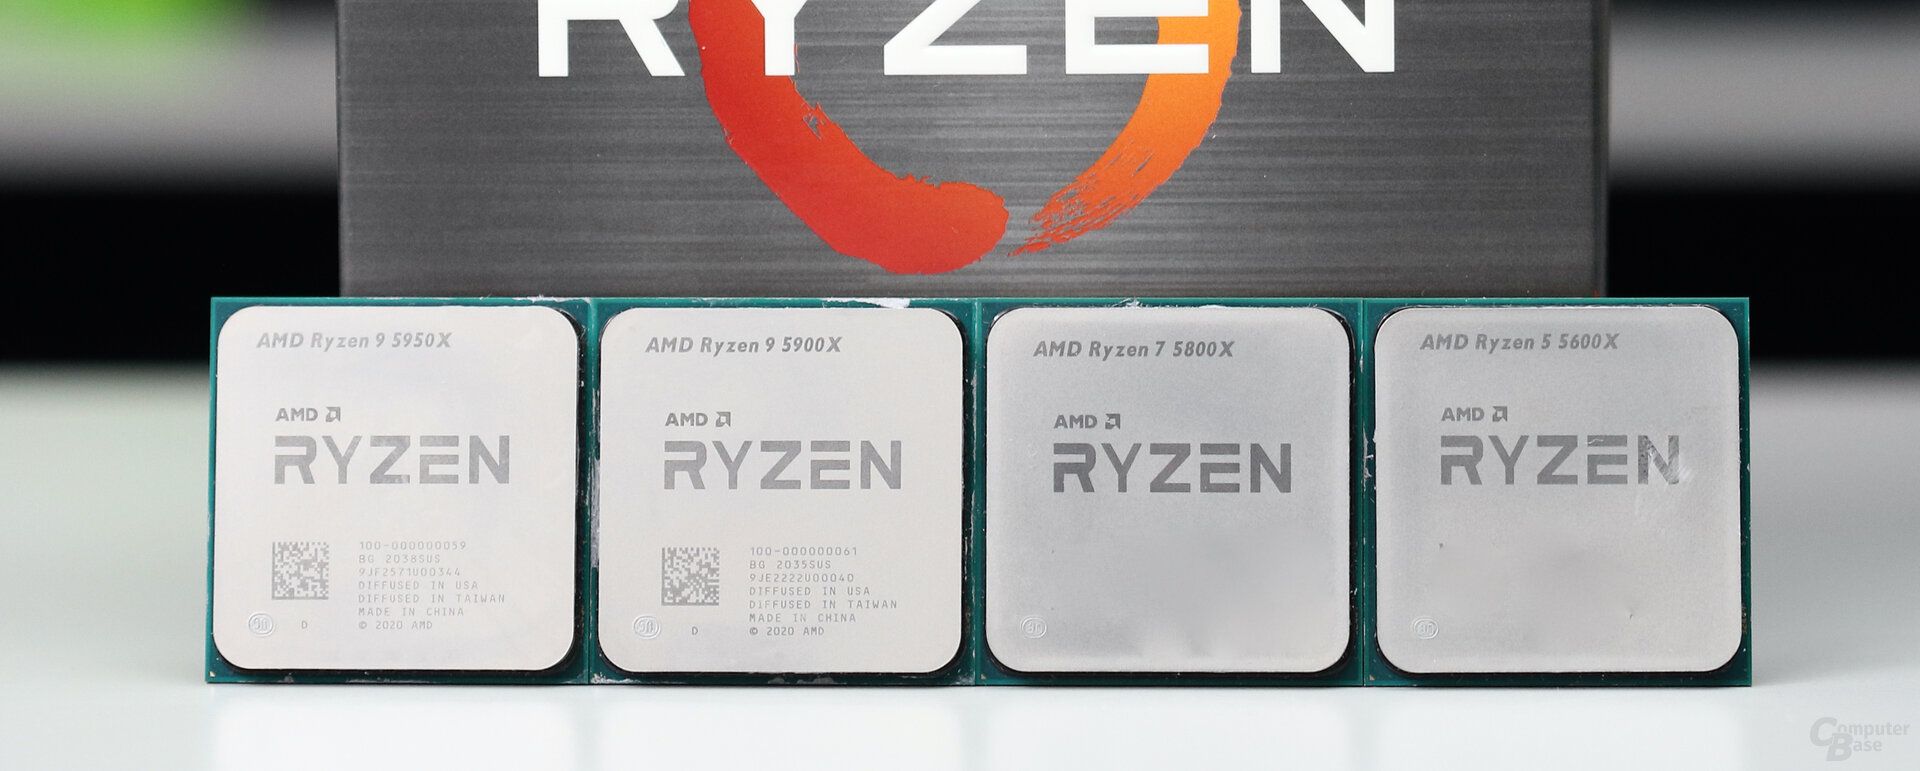 AMD Ryzen 9 5950X, 5900X, Ryzen 7 5800X and Ryzen 5 5600X in the test